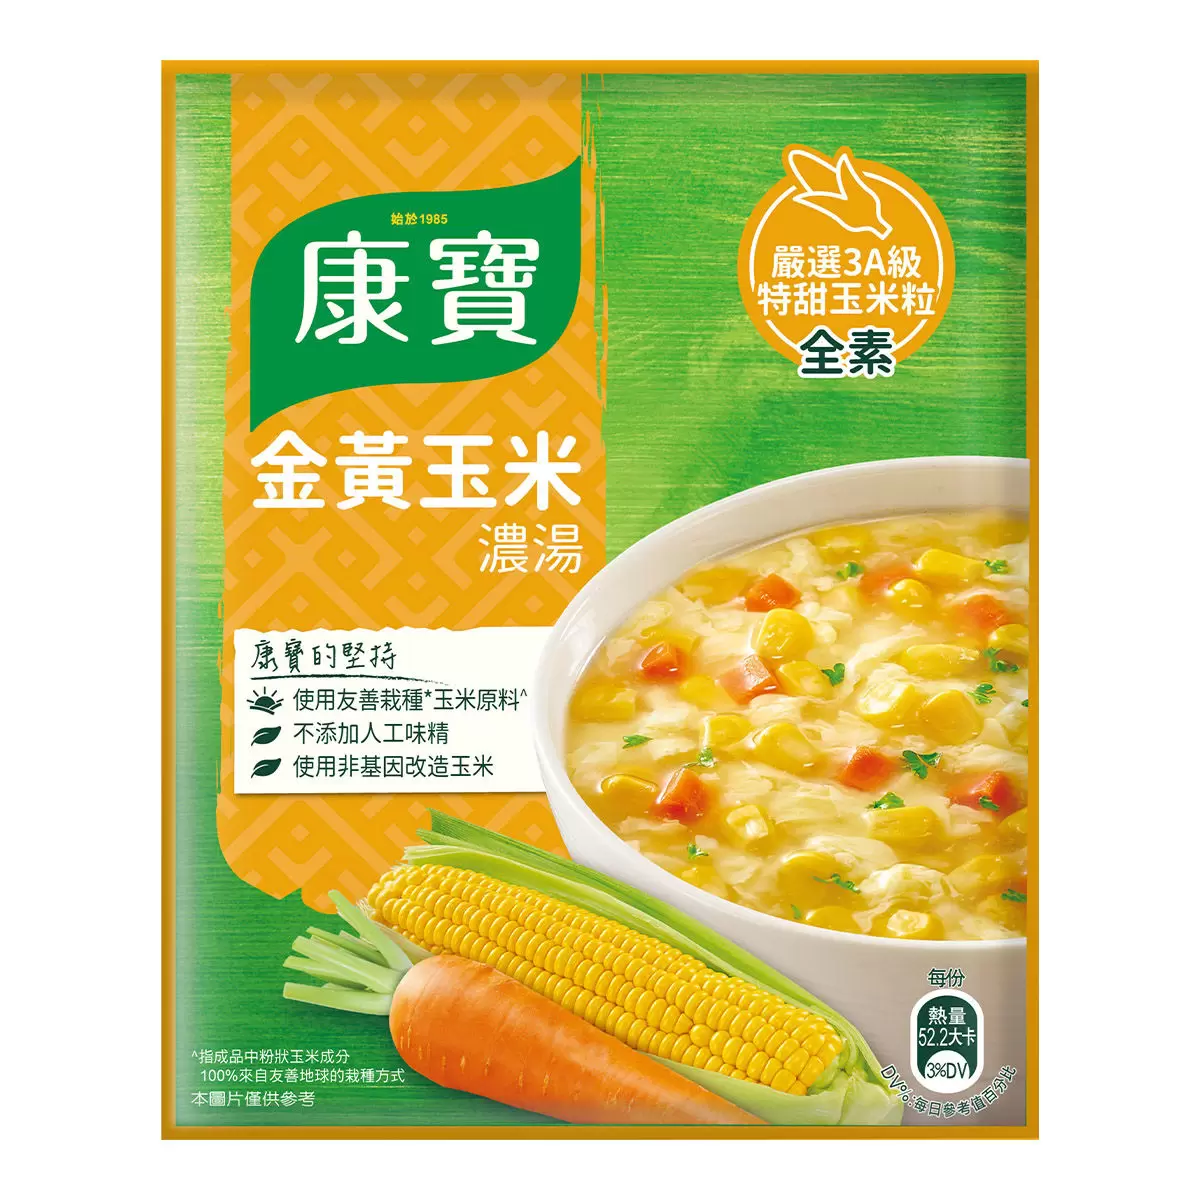 Image Knorr Golden Corn Soup 康宝金黄玉米弄汤 56 grams